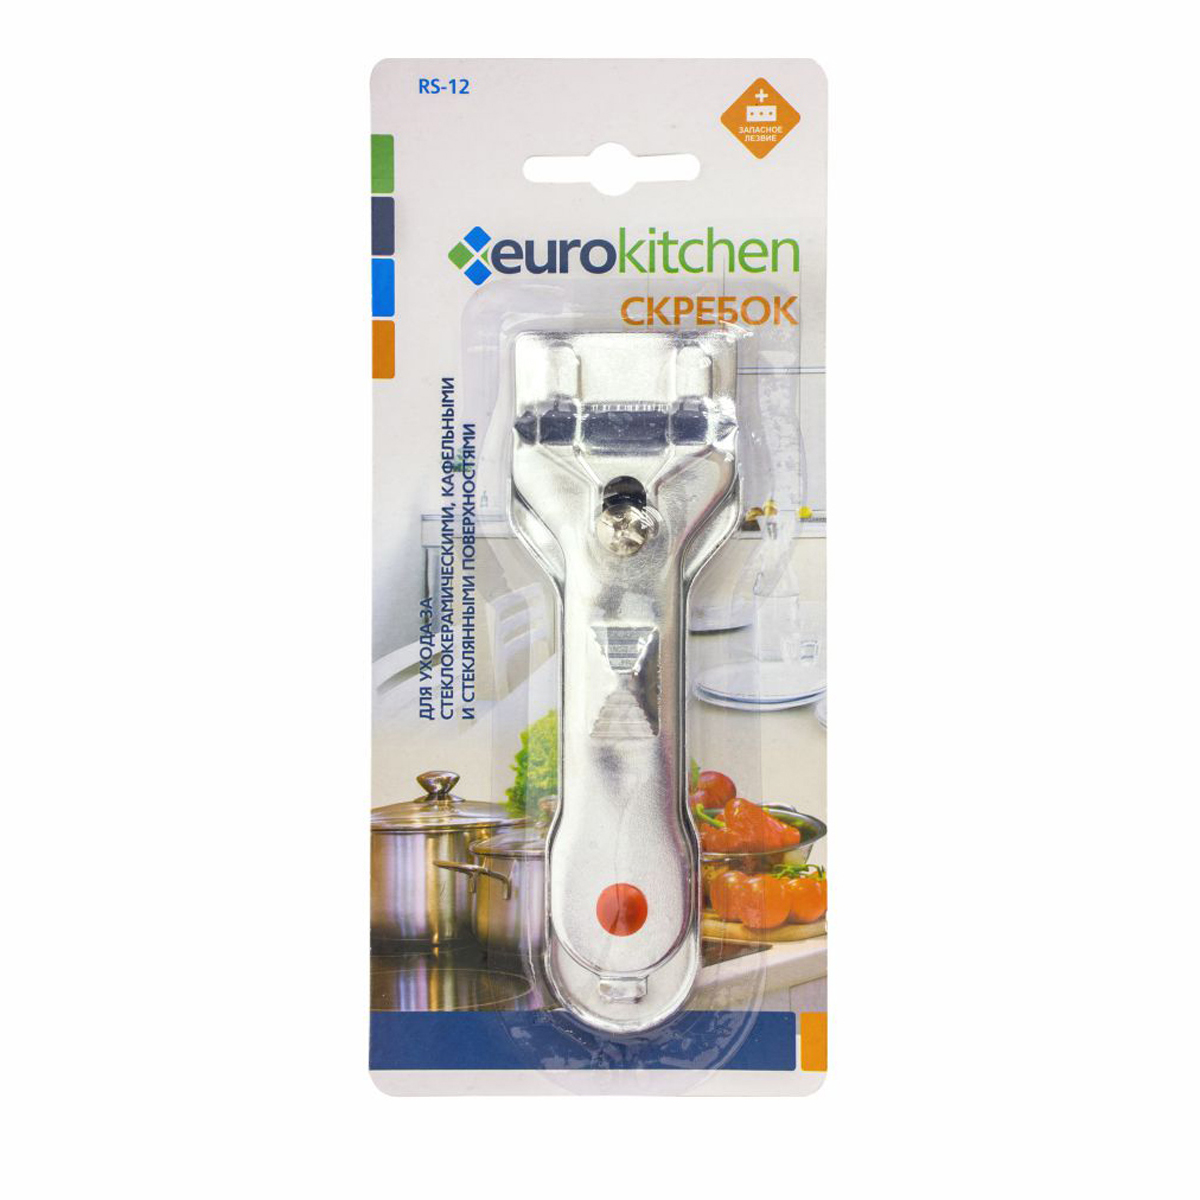 Скребок Eurokitchen для чистки стеклокерамики, серебристый